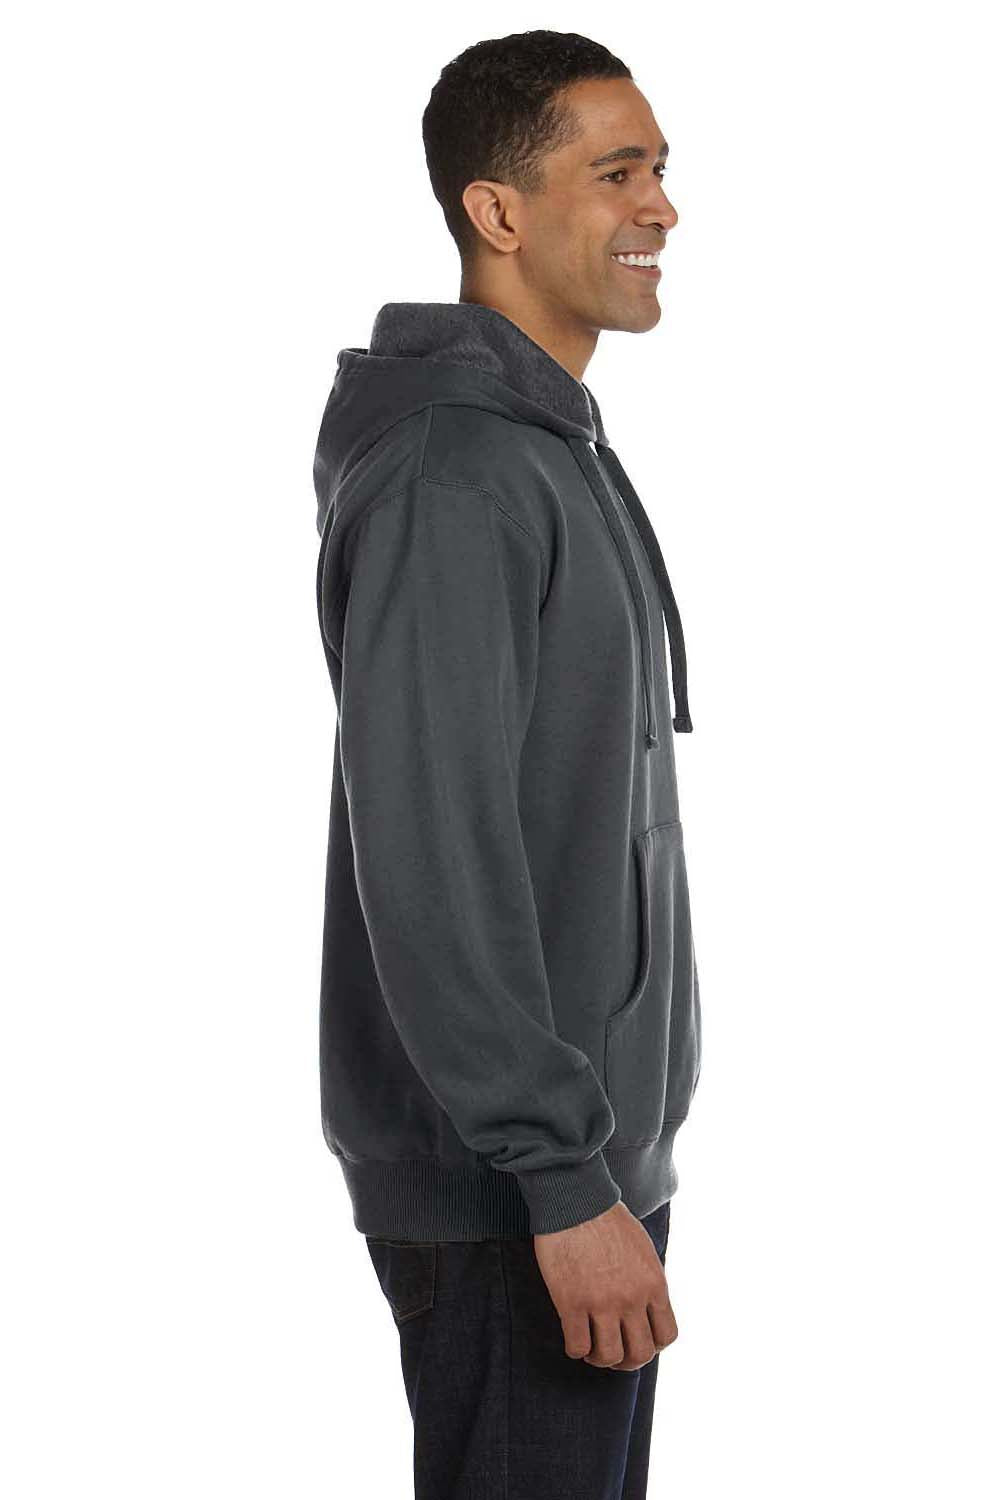 Econscious EC5500 Mens Hooded Sweatshirt Hoodie Charcoal Grey Side